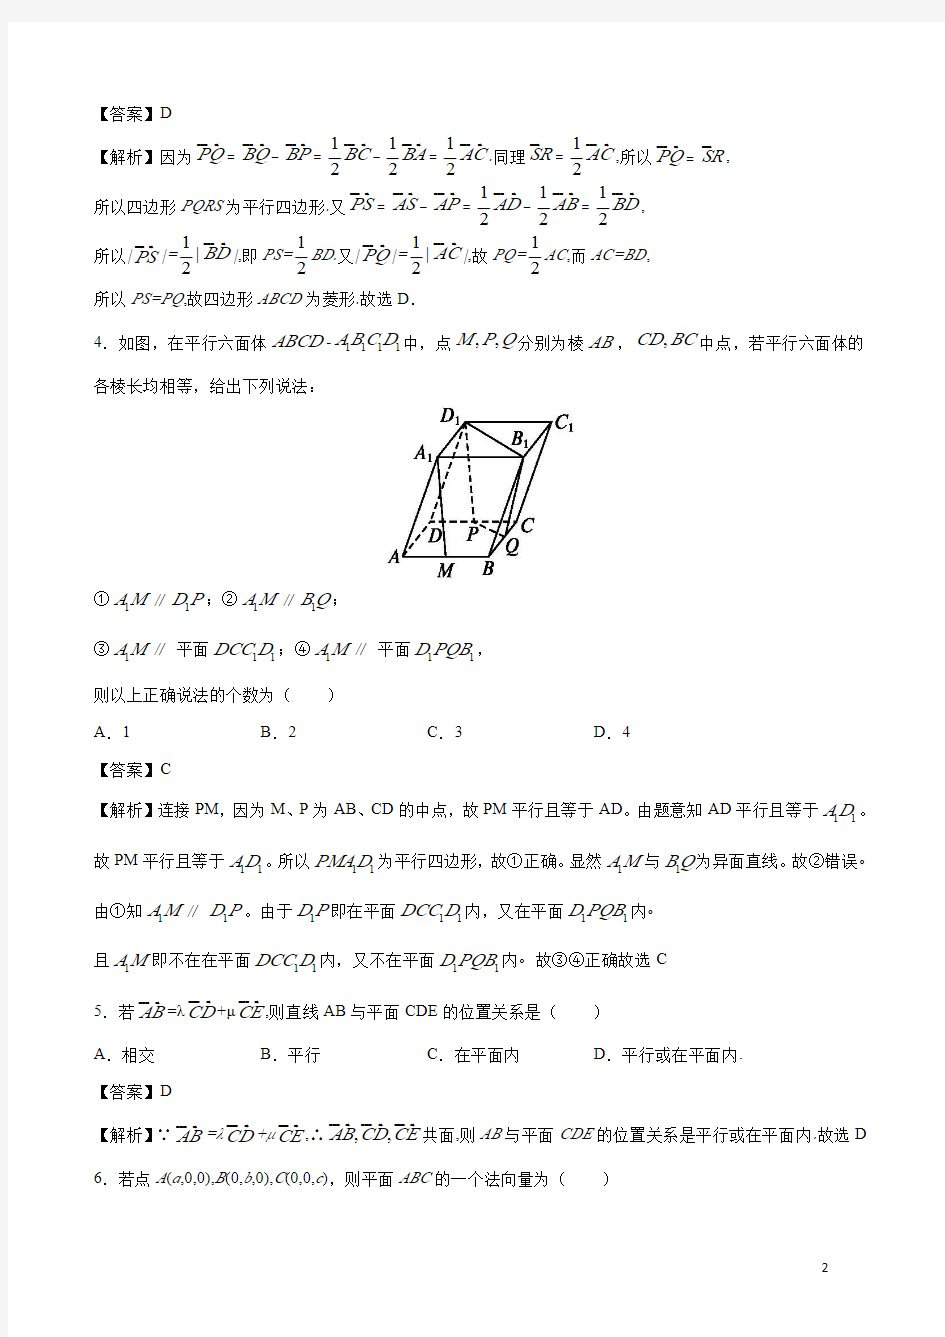 1.4.1 运用立体几何中的向量方法解决平行问题(教师版)